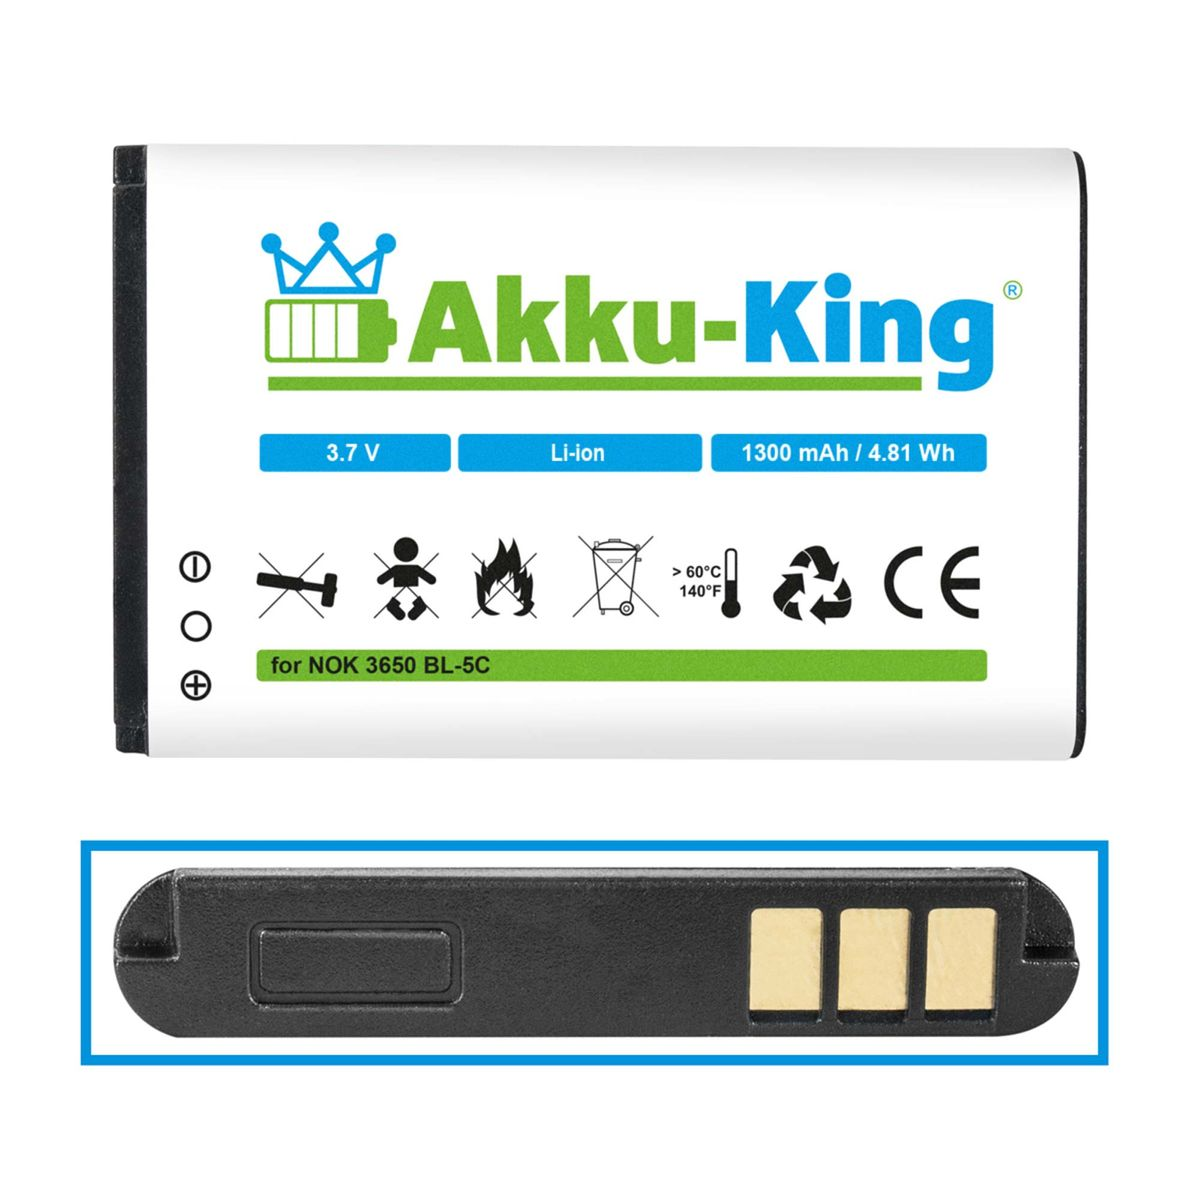 AKKU-KING Akku kompatibel mit 1300mAh Volt, GH4000 Teltonika Geräte-Akku, Li-Ion 3.7